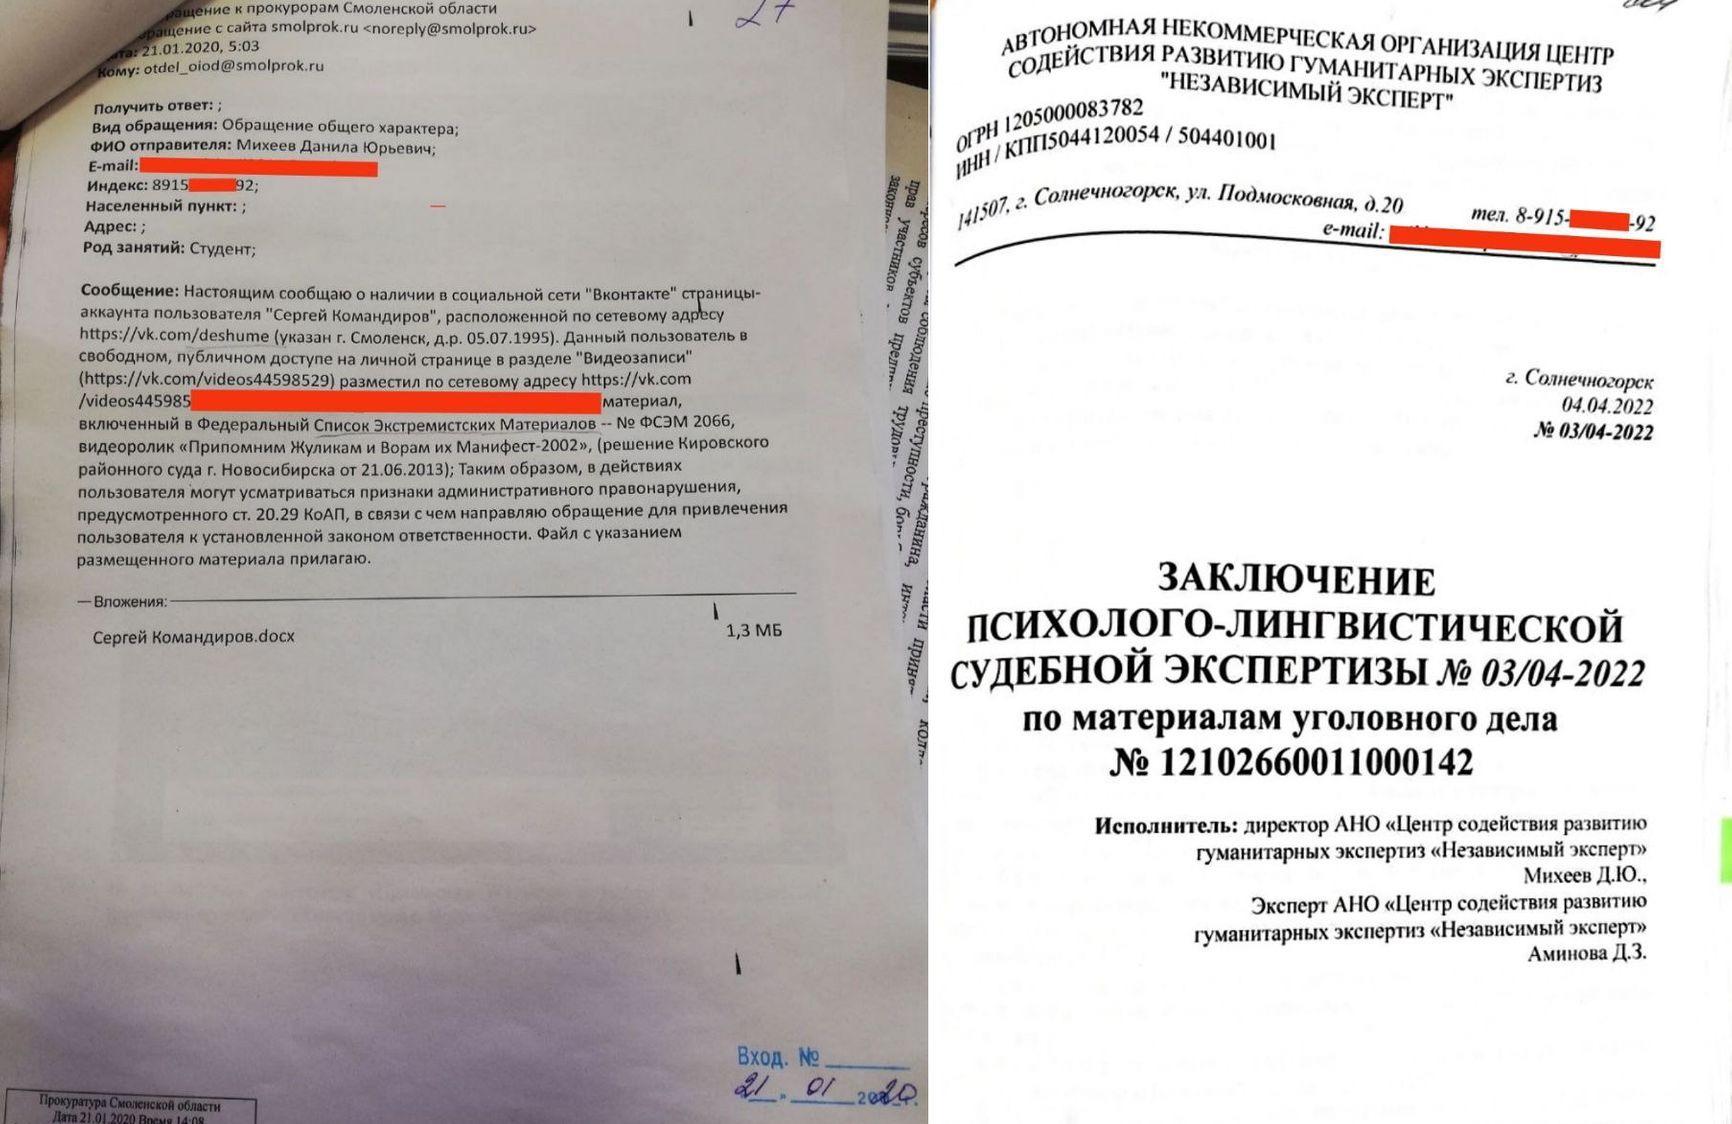 Волонтера из штаба Навального отправили в колонию по экспертизе студента, который на него донес